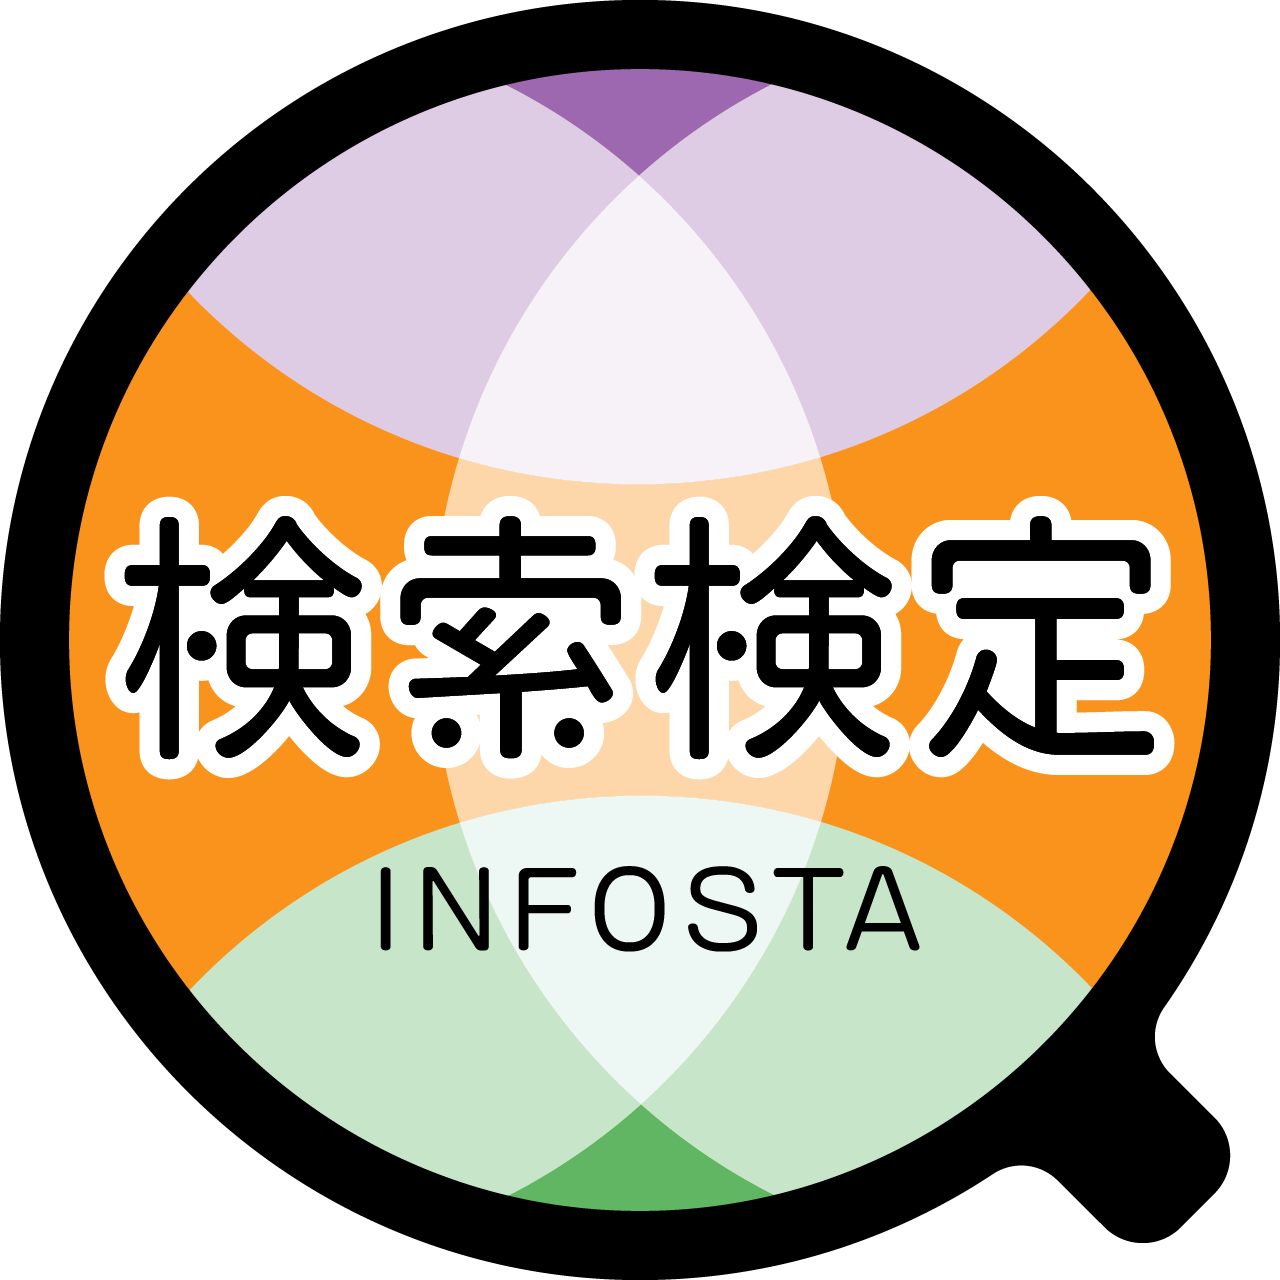 一般社団法人 情報科学技術協会（INFOSTA) 図書館総合展